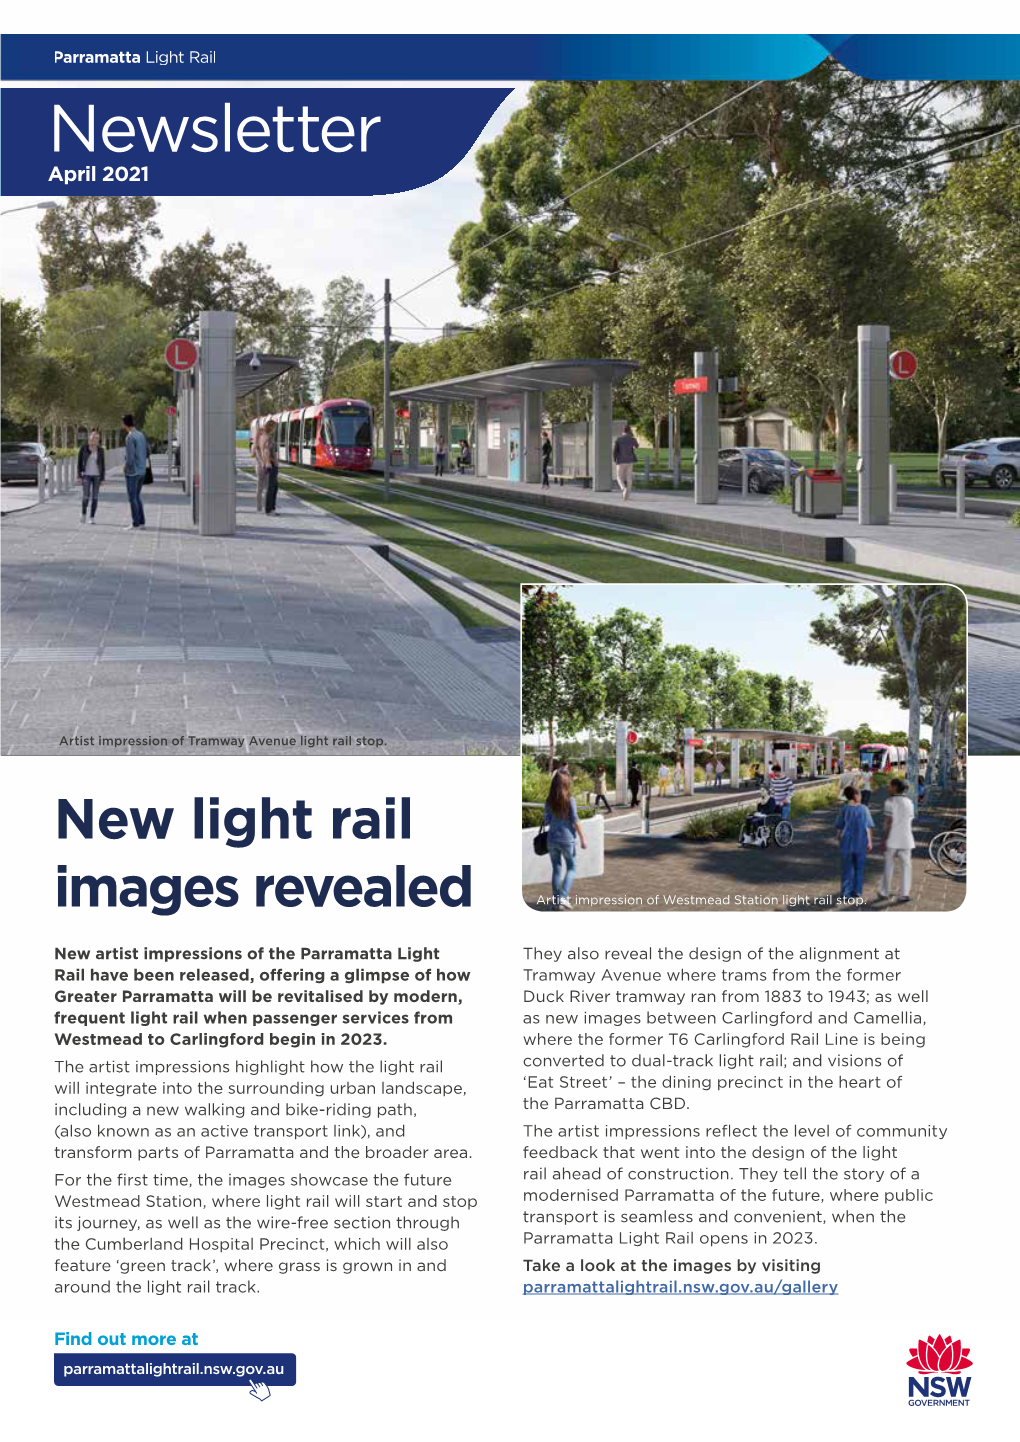 Parramatta Light Rail News Update April 2021